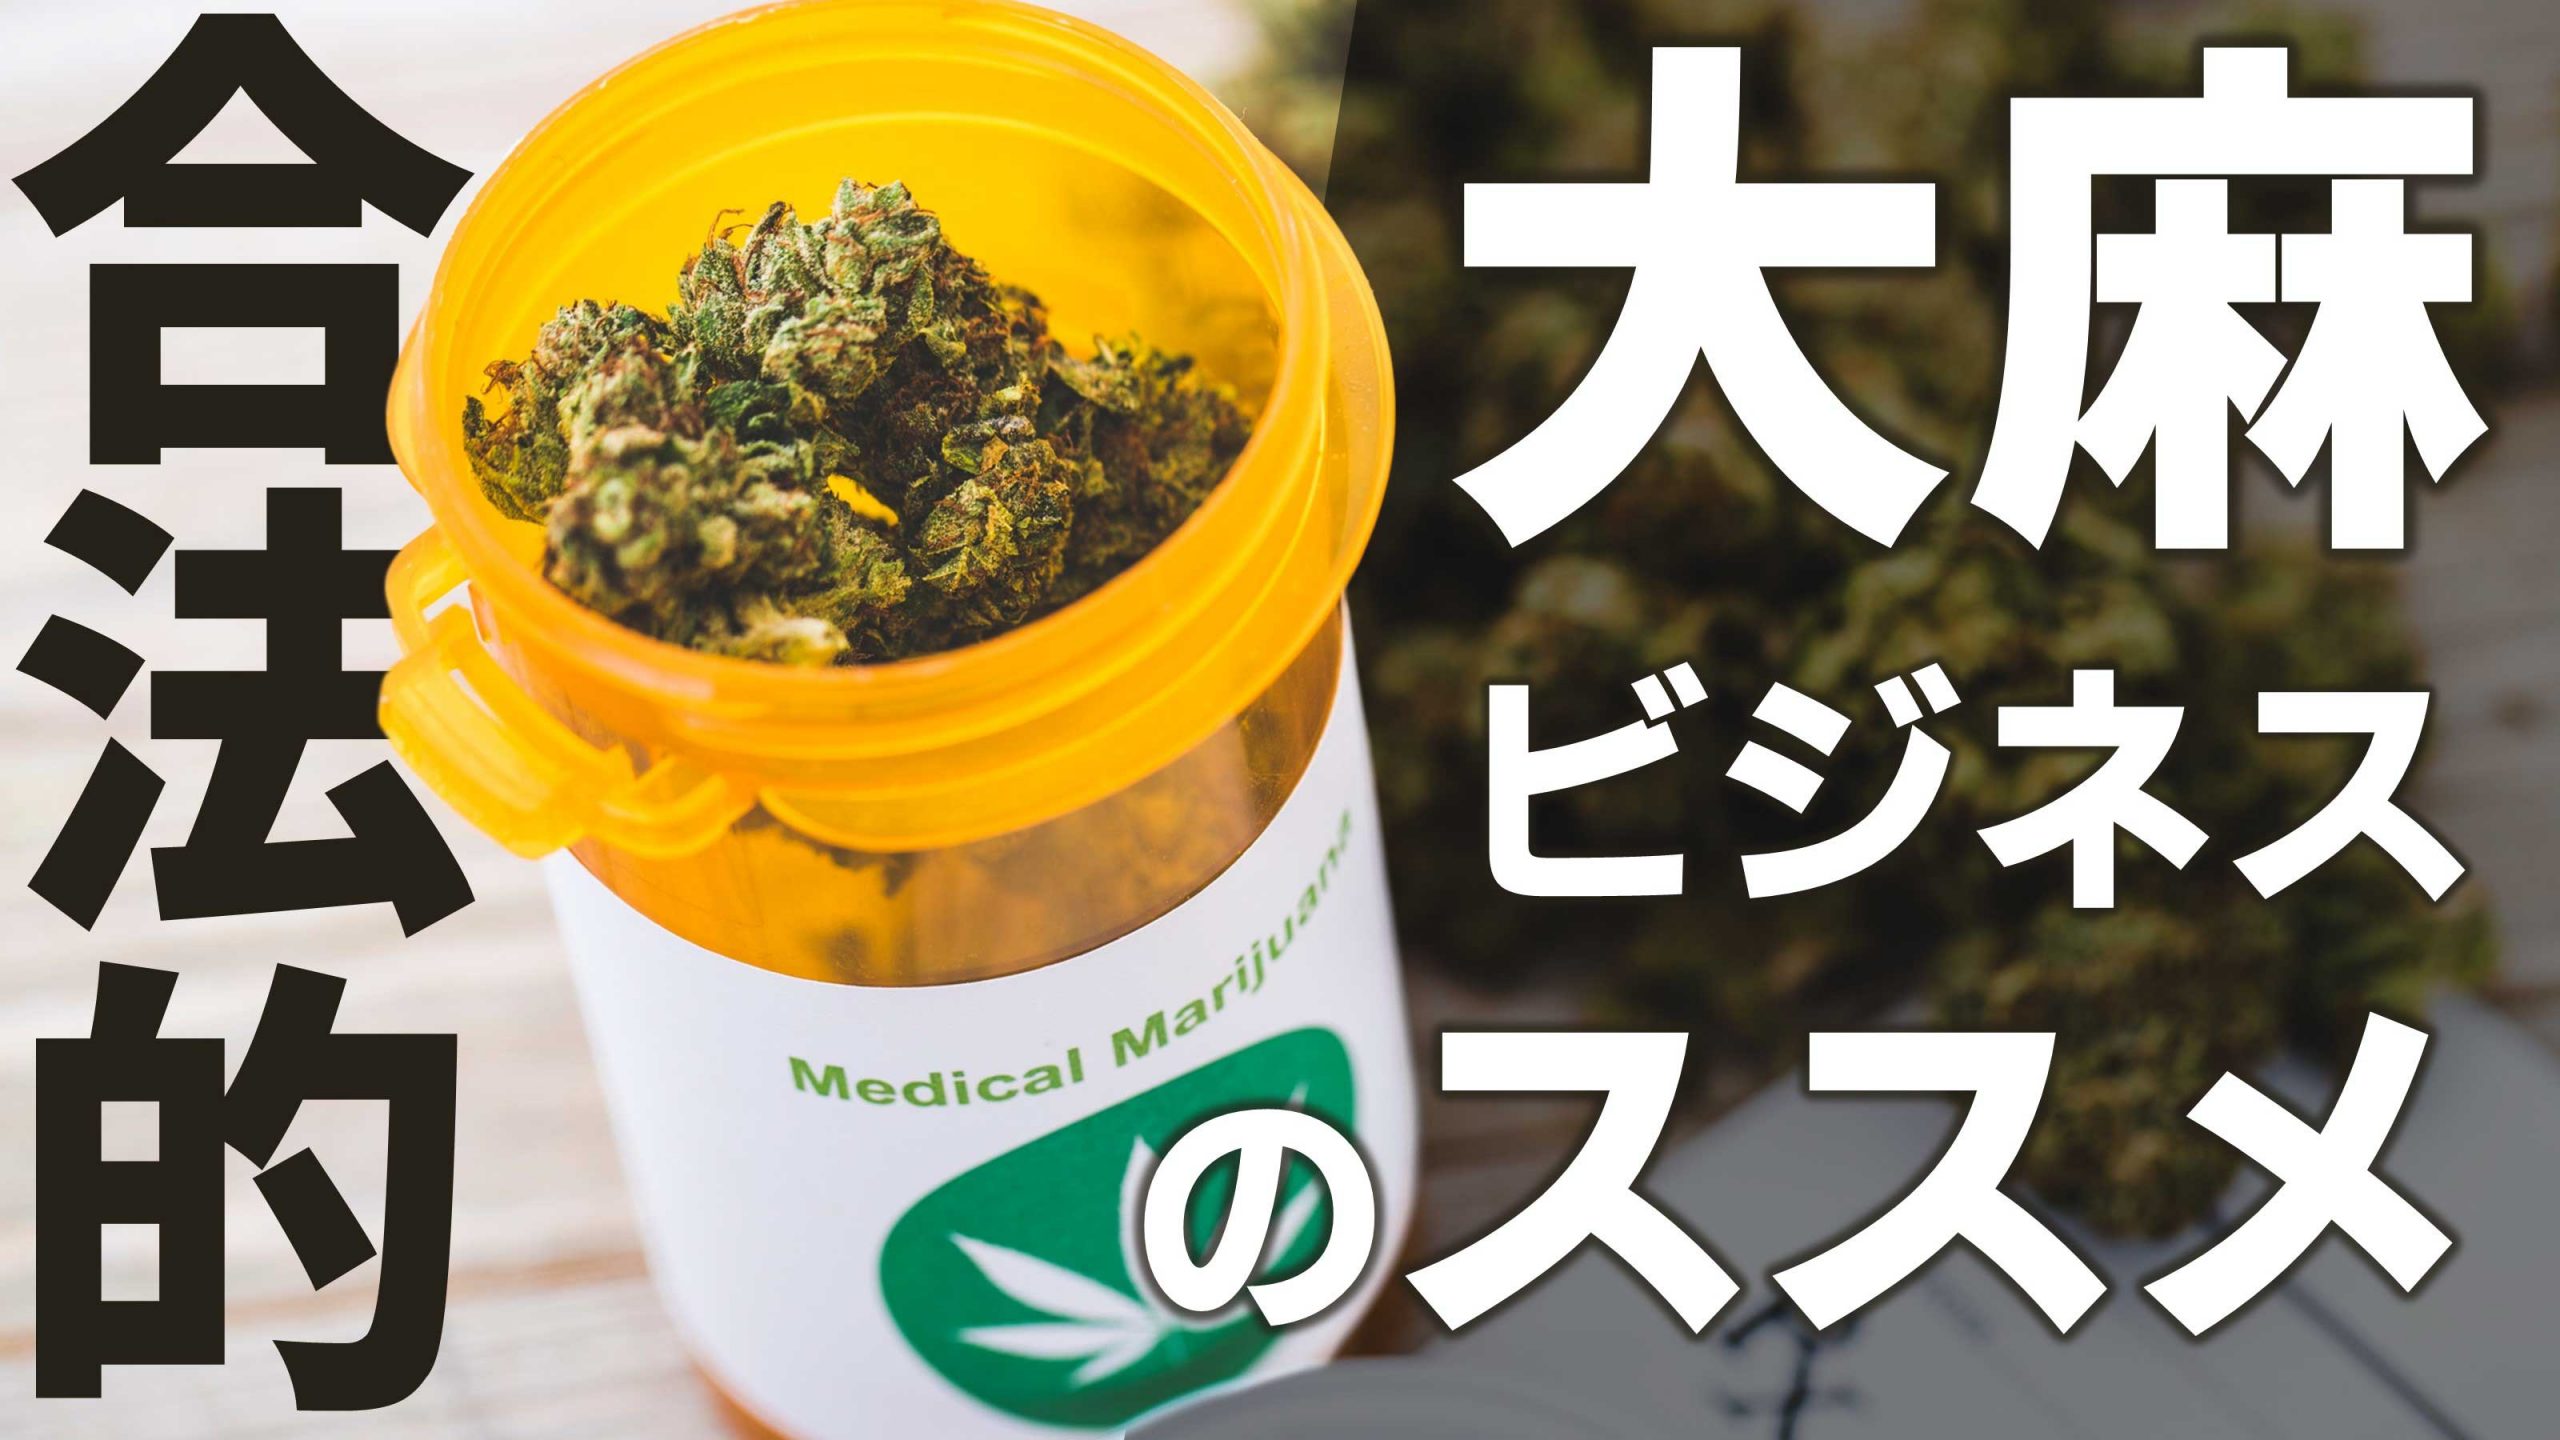 誤解されがちな医療大麻のリアルと 大麻ビジネスの可能性 Kiki Legalizejapan サンクチュアリ出版 ほんよま